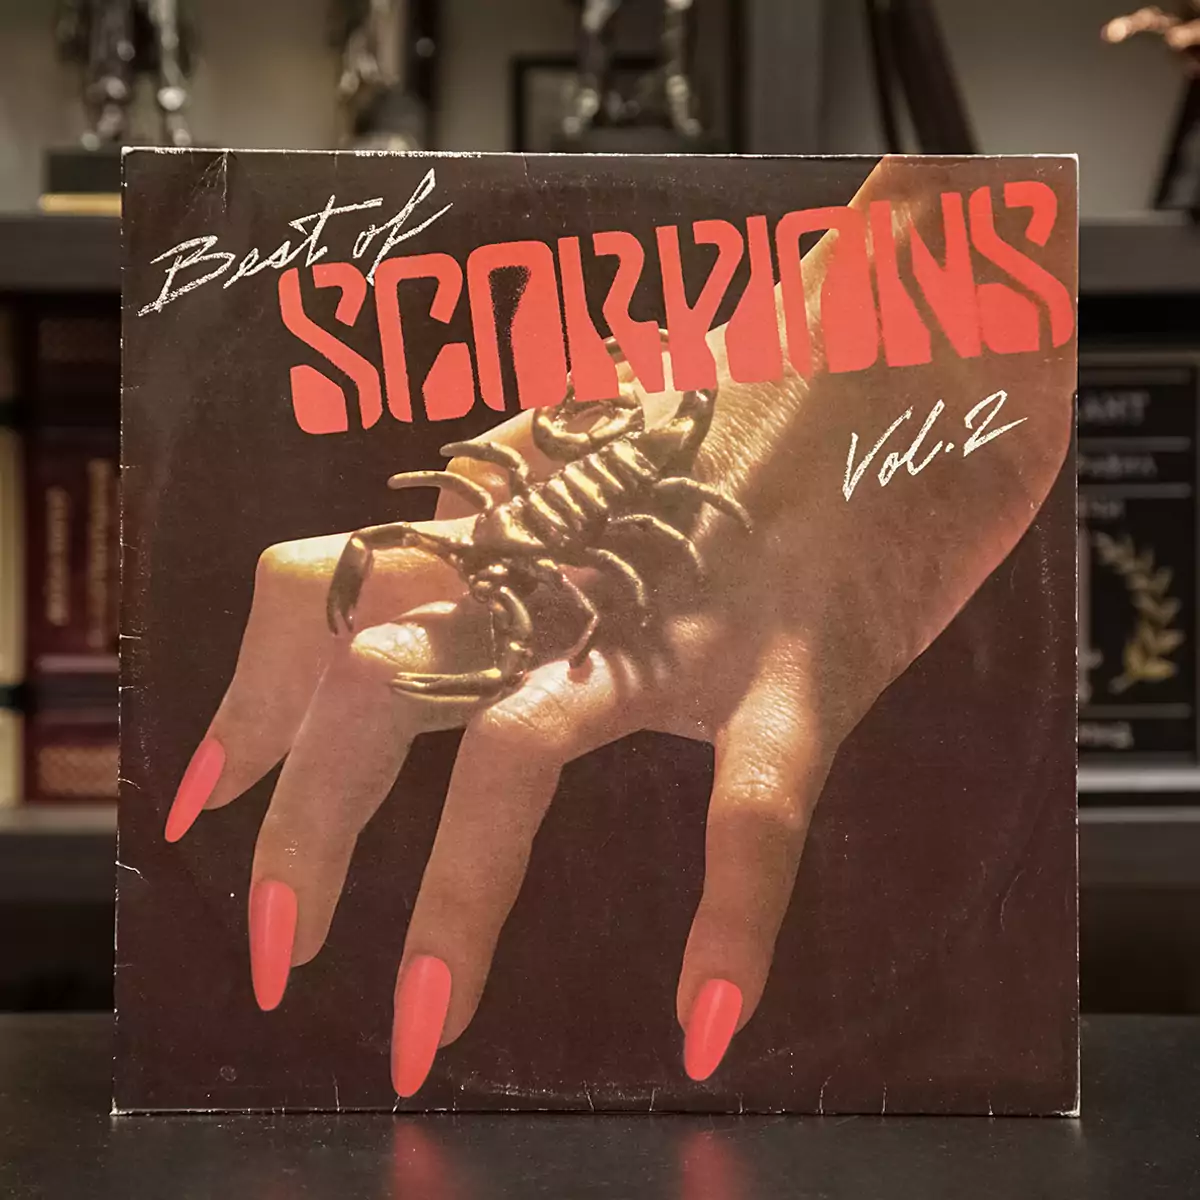 Вінілова платівка "Best of Scorpions" (частина 2)